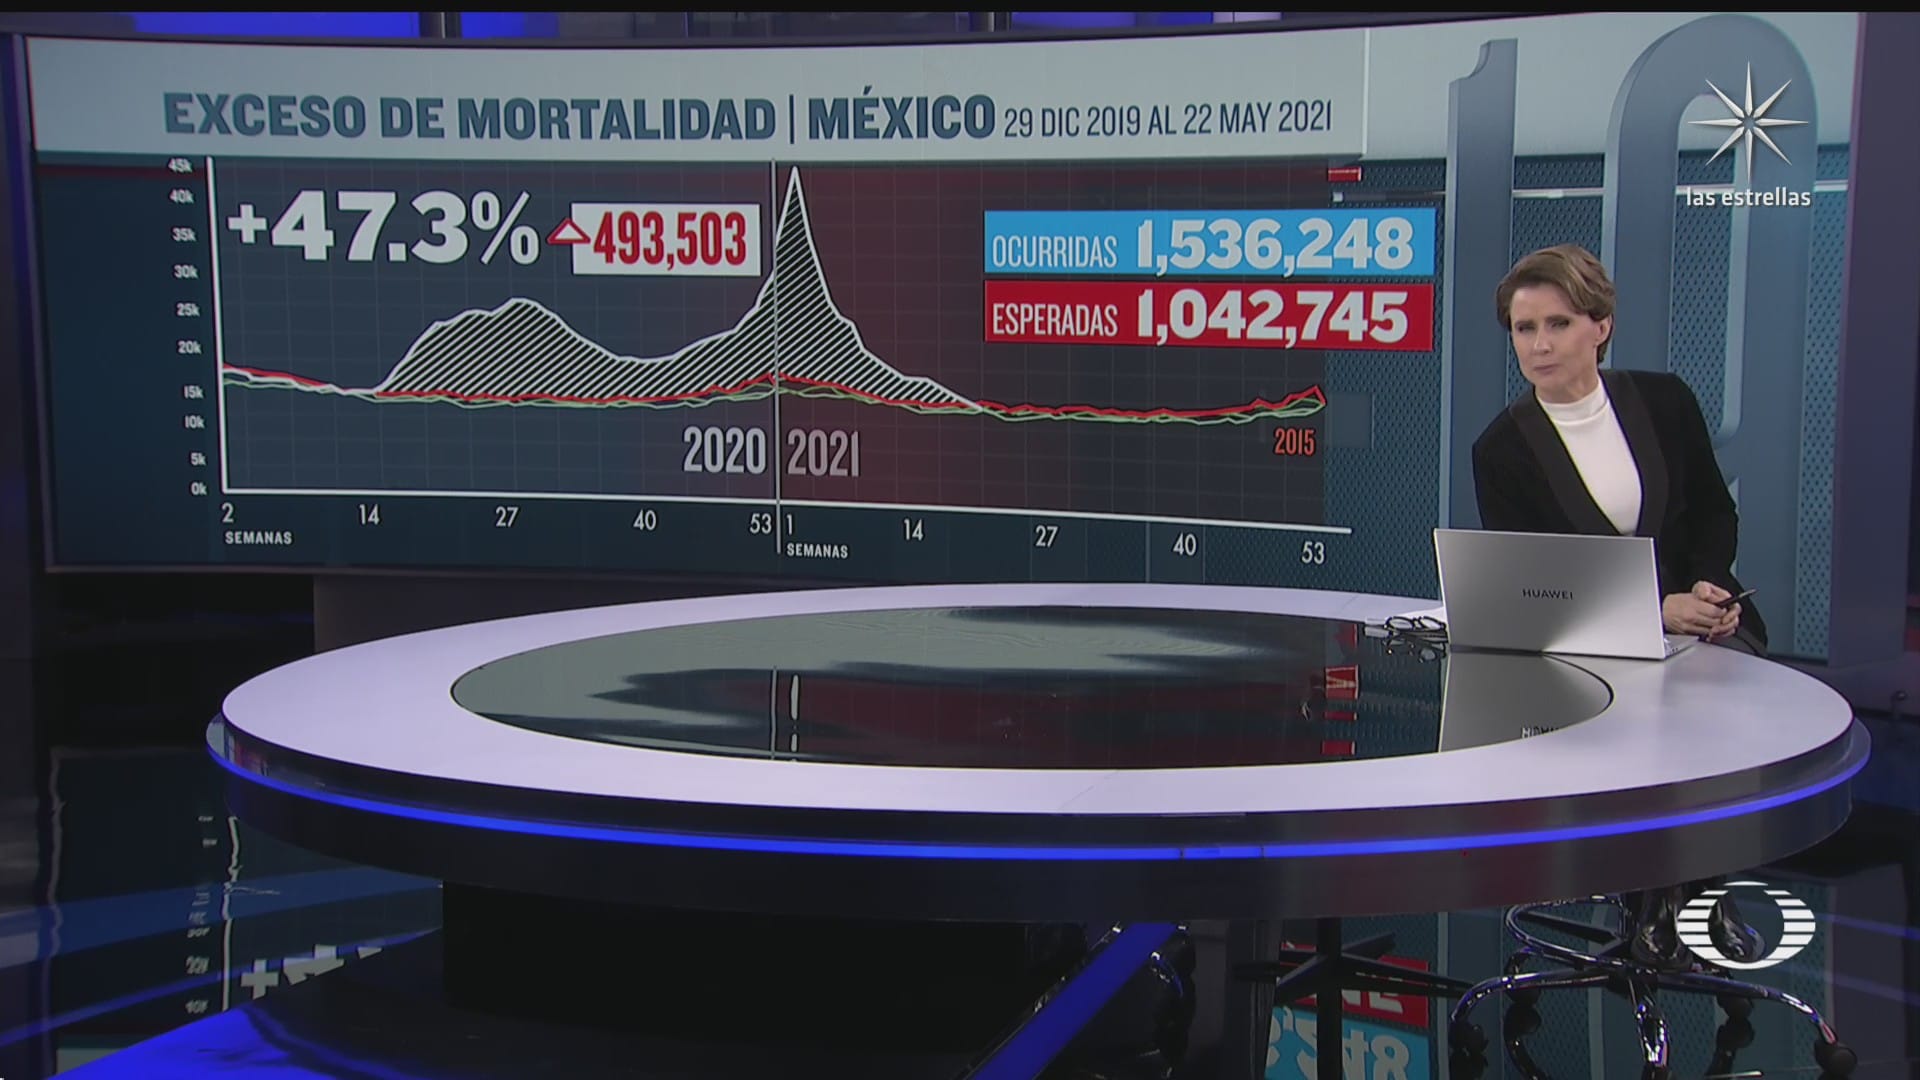 exceso de mortalidad por covid en mexico fue menor al esperado